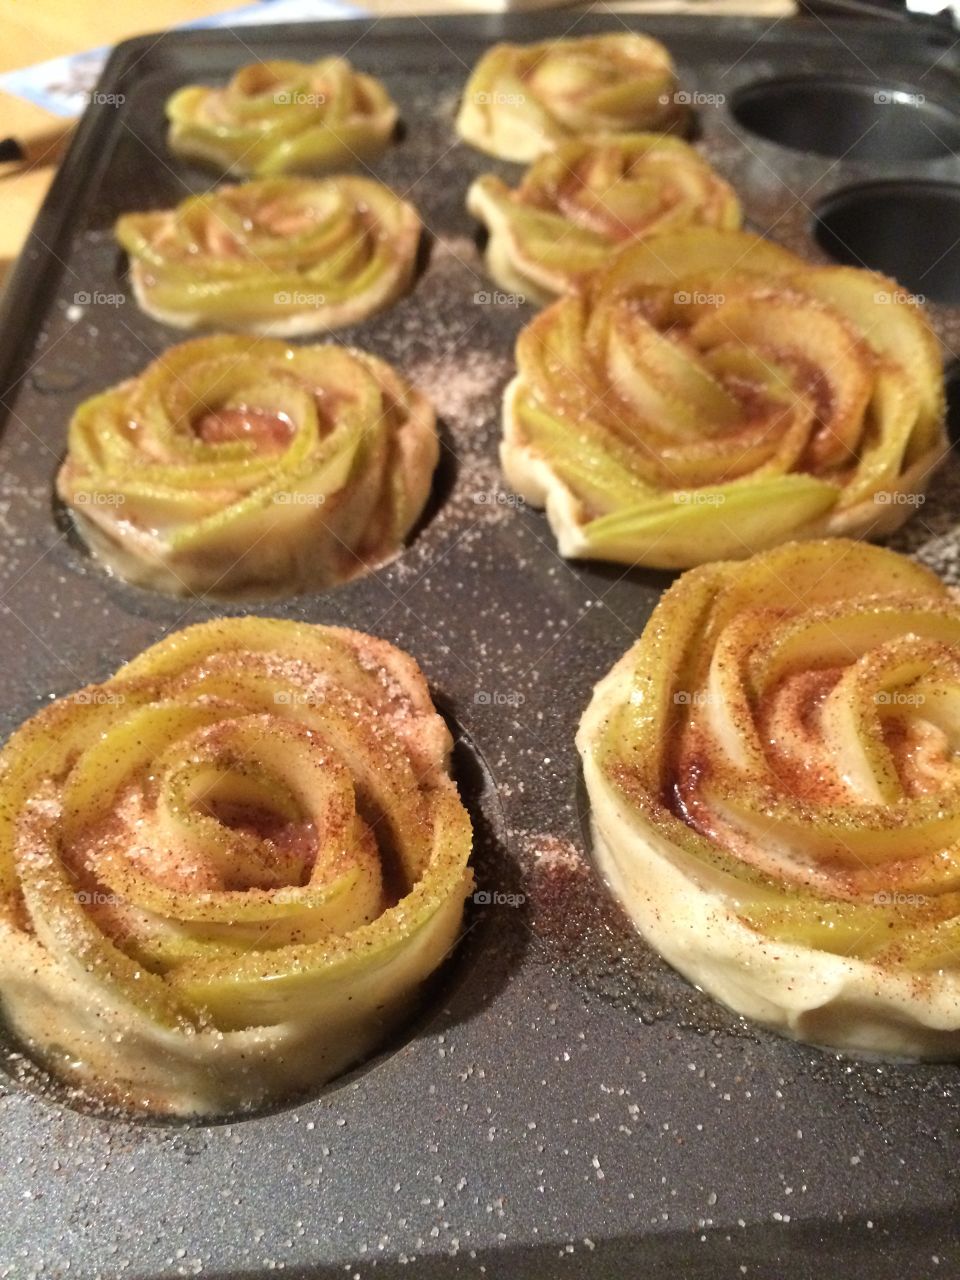 Baked apple roses